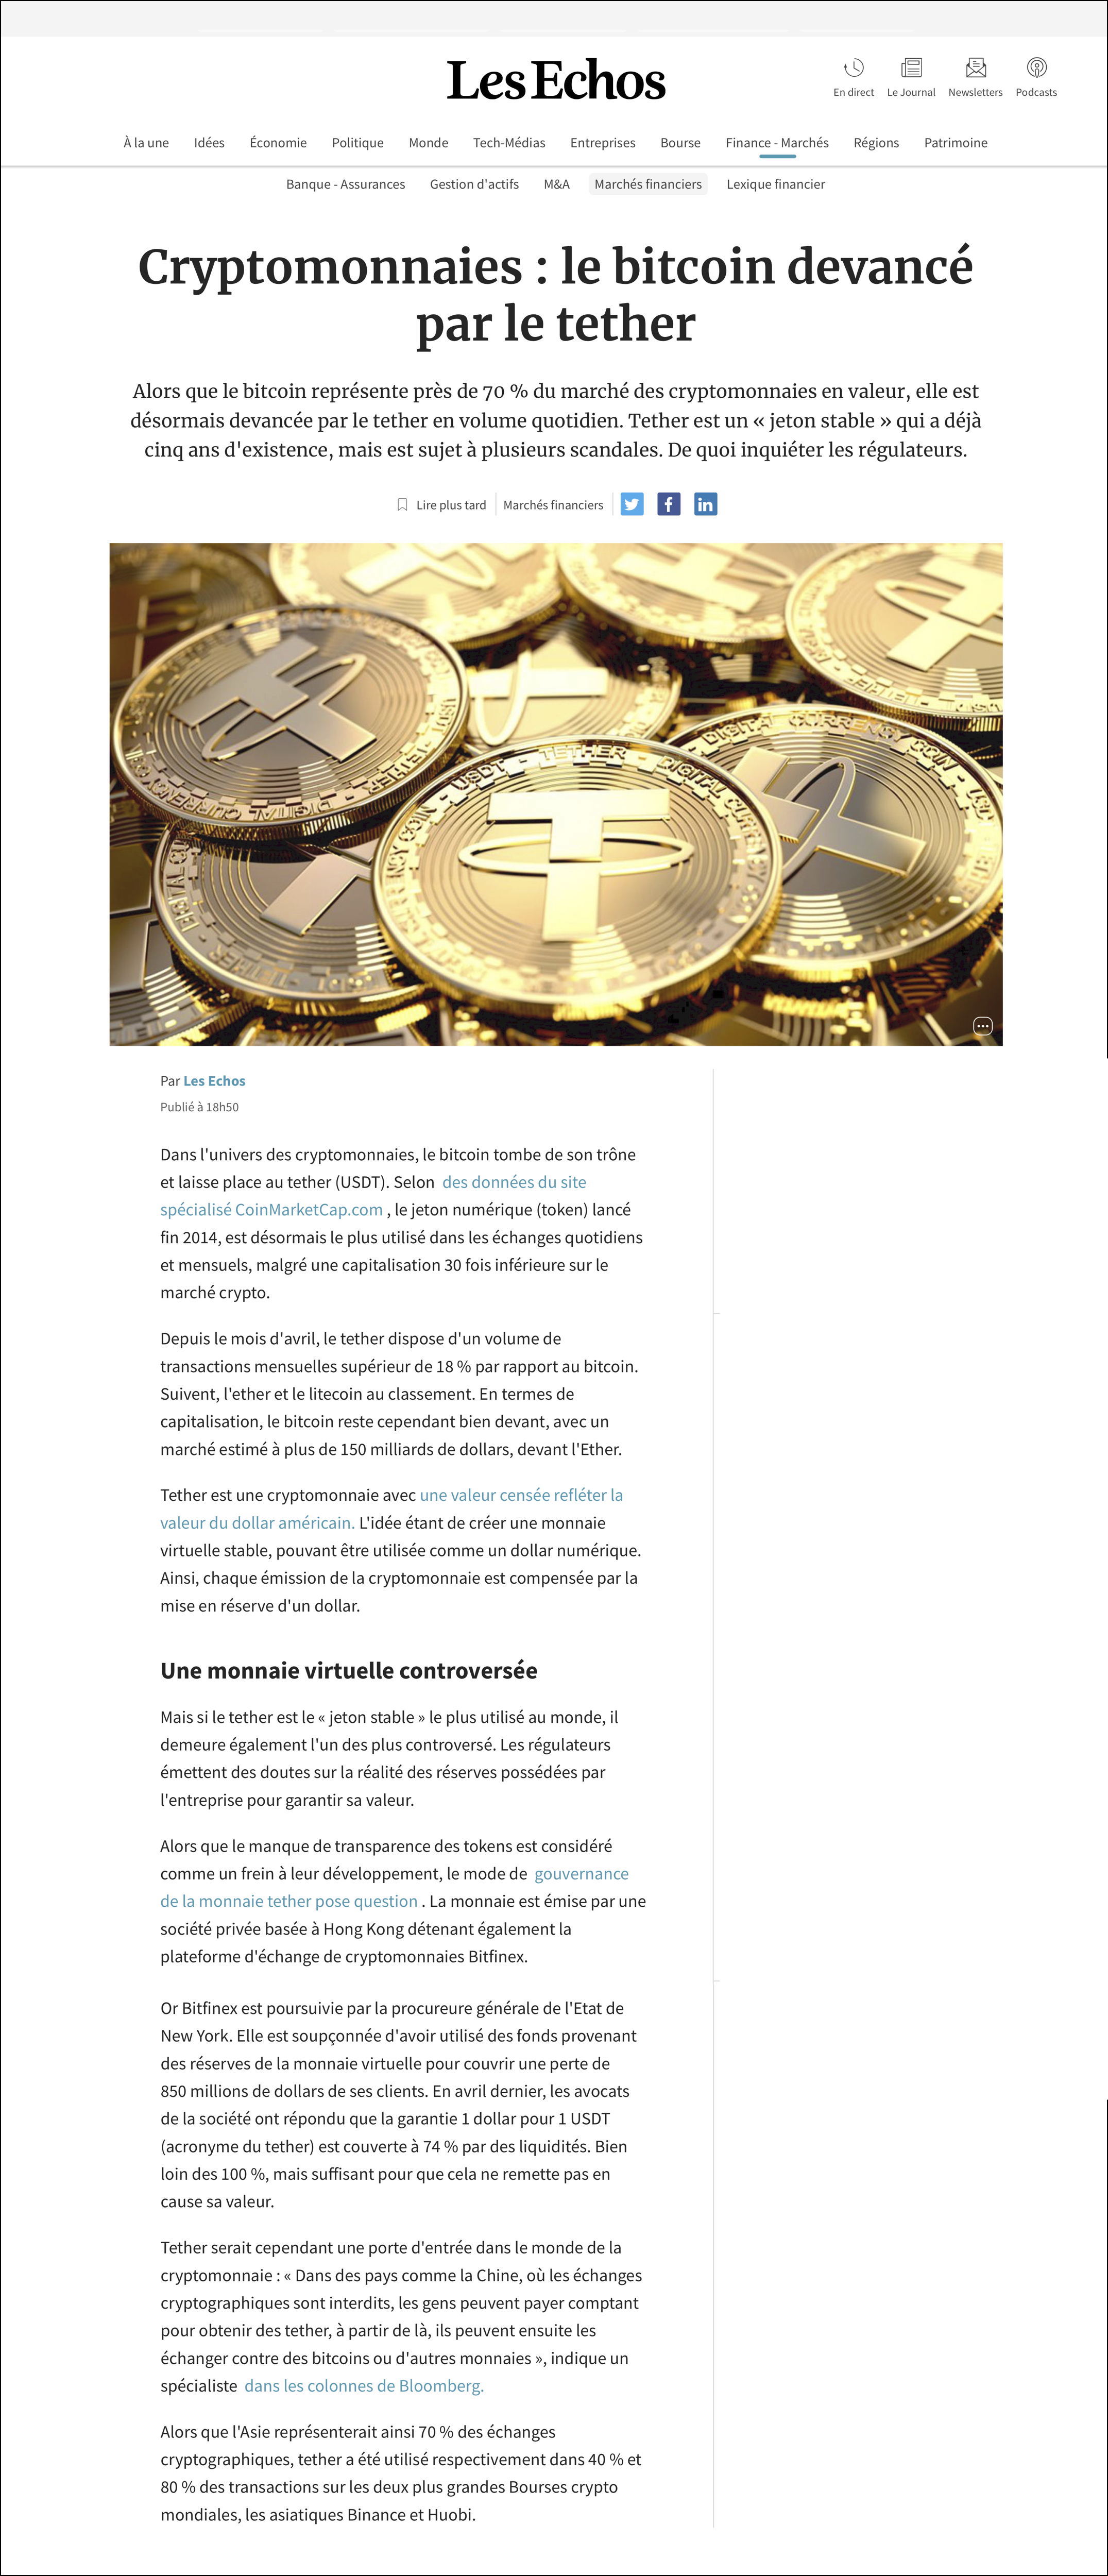 Cryptomonnaies _ le bitcoin devancé par le tether _ Les Echos.jpg